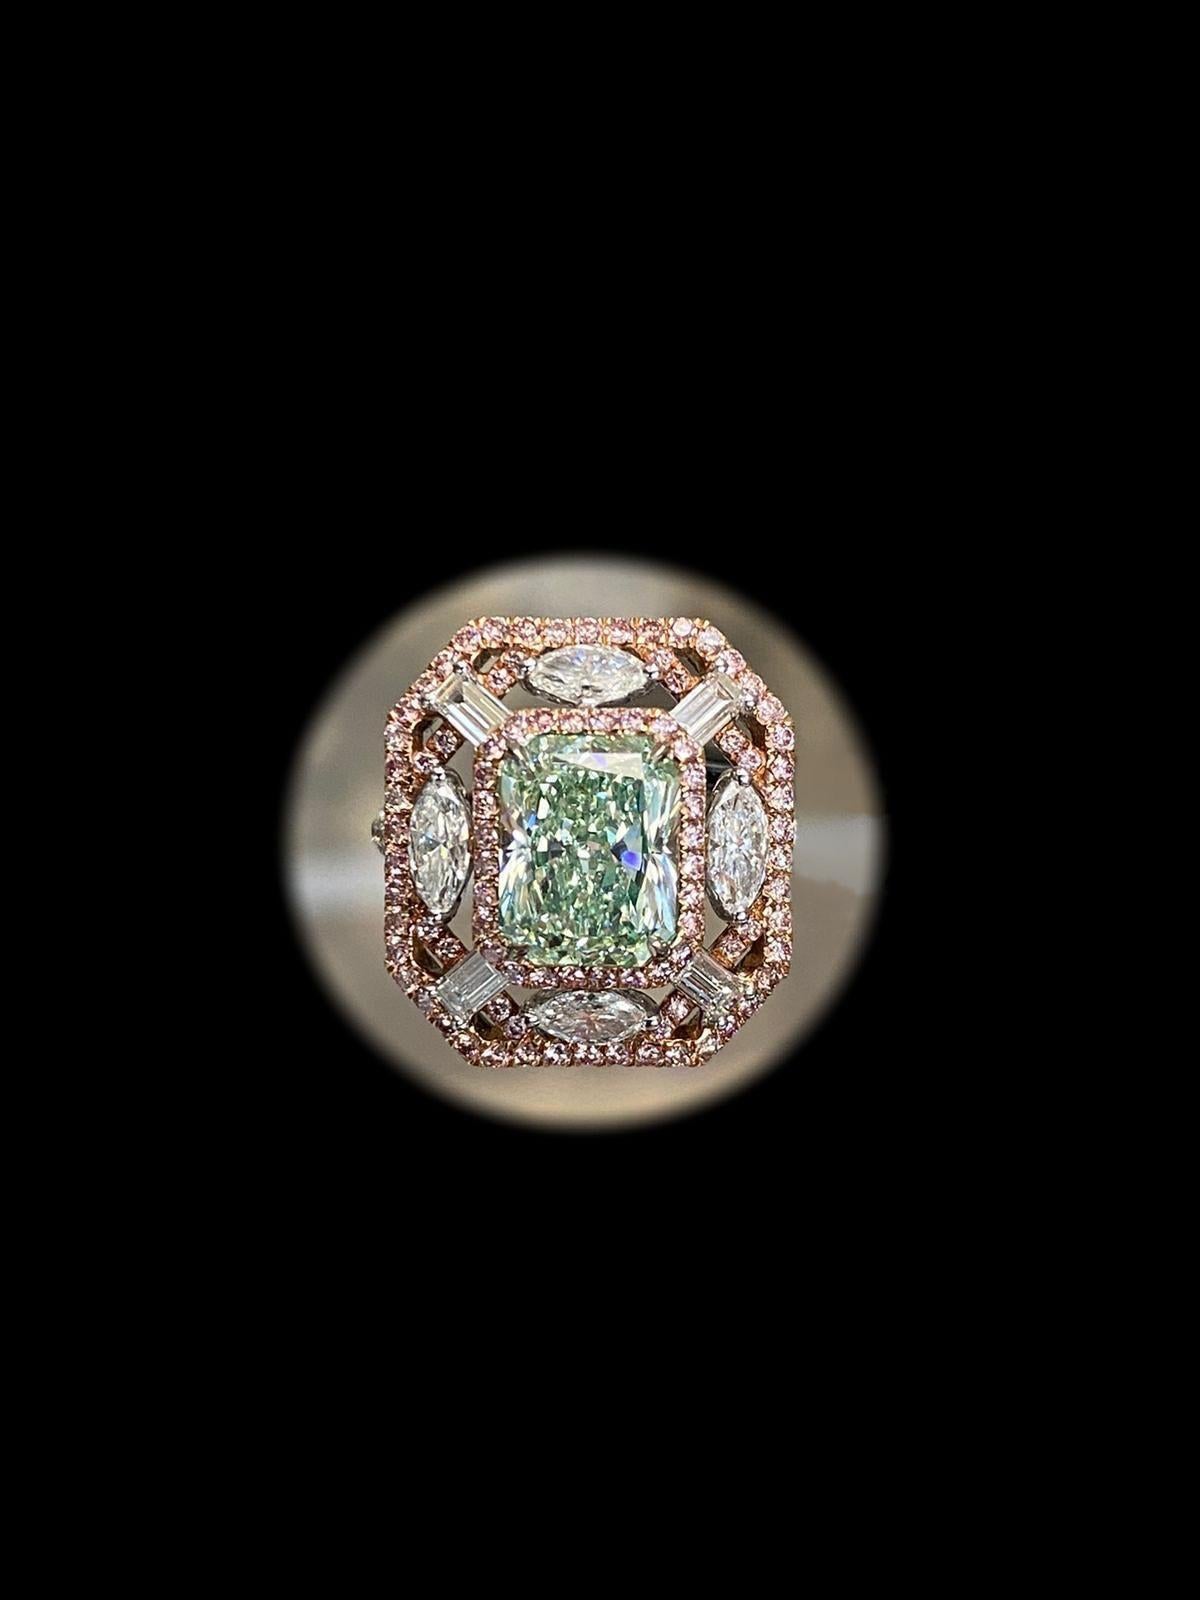 Aus dem Gewölbe des Emilio-Schmuckmuseums, mit einem atemberaubenden Gia-zertifizierten 3,00-Karat-Diamanten, der in der Mitte in gelblich-grüner Farbe gefasst ist. Im Gegensatz zu gelb-grün, gelblich bedeutet, dass es nur etwa 10% gelben Oberton